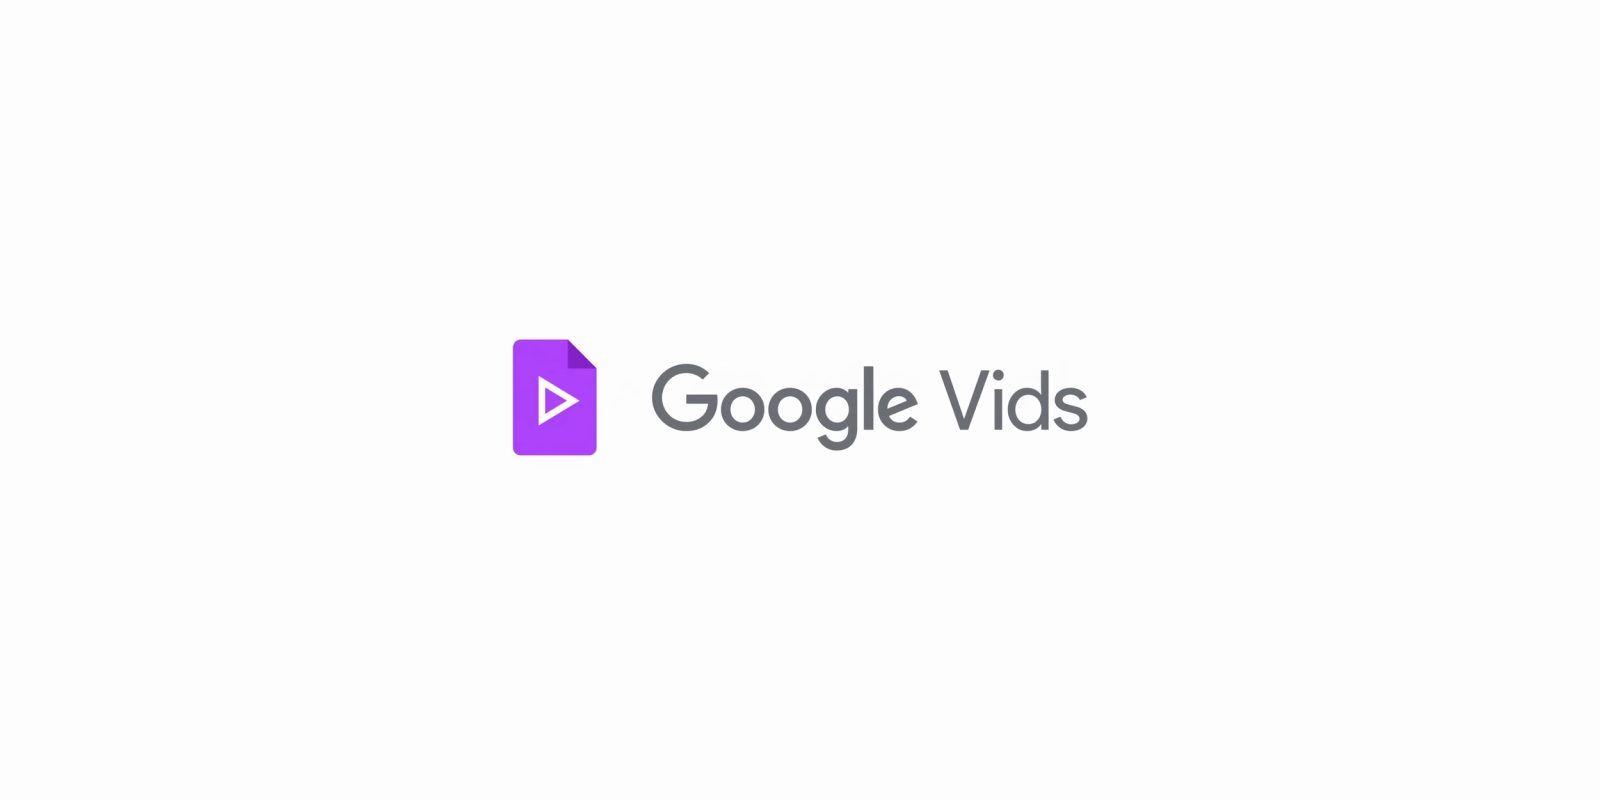 La aplicación Google Vids ya está disponible para pruebas en Workspace Labs